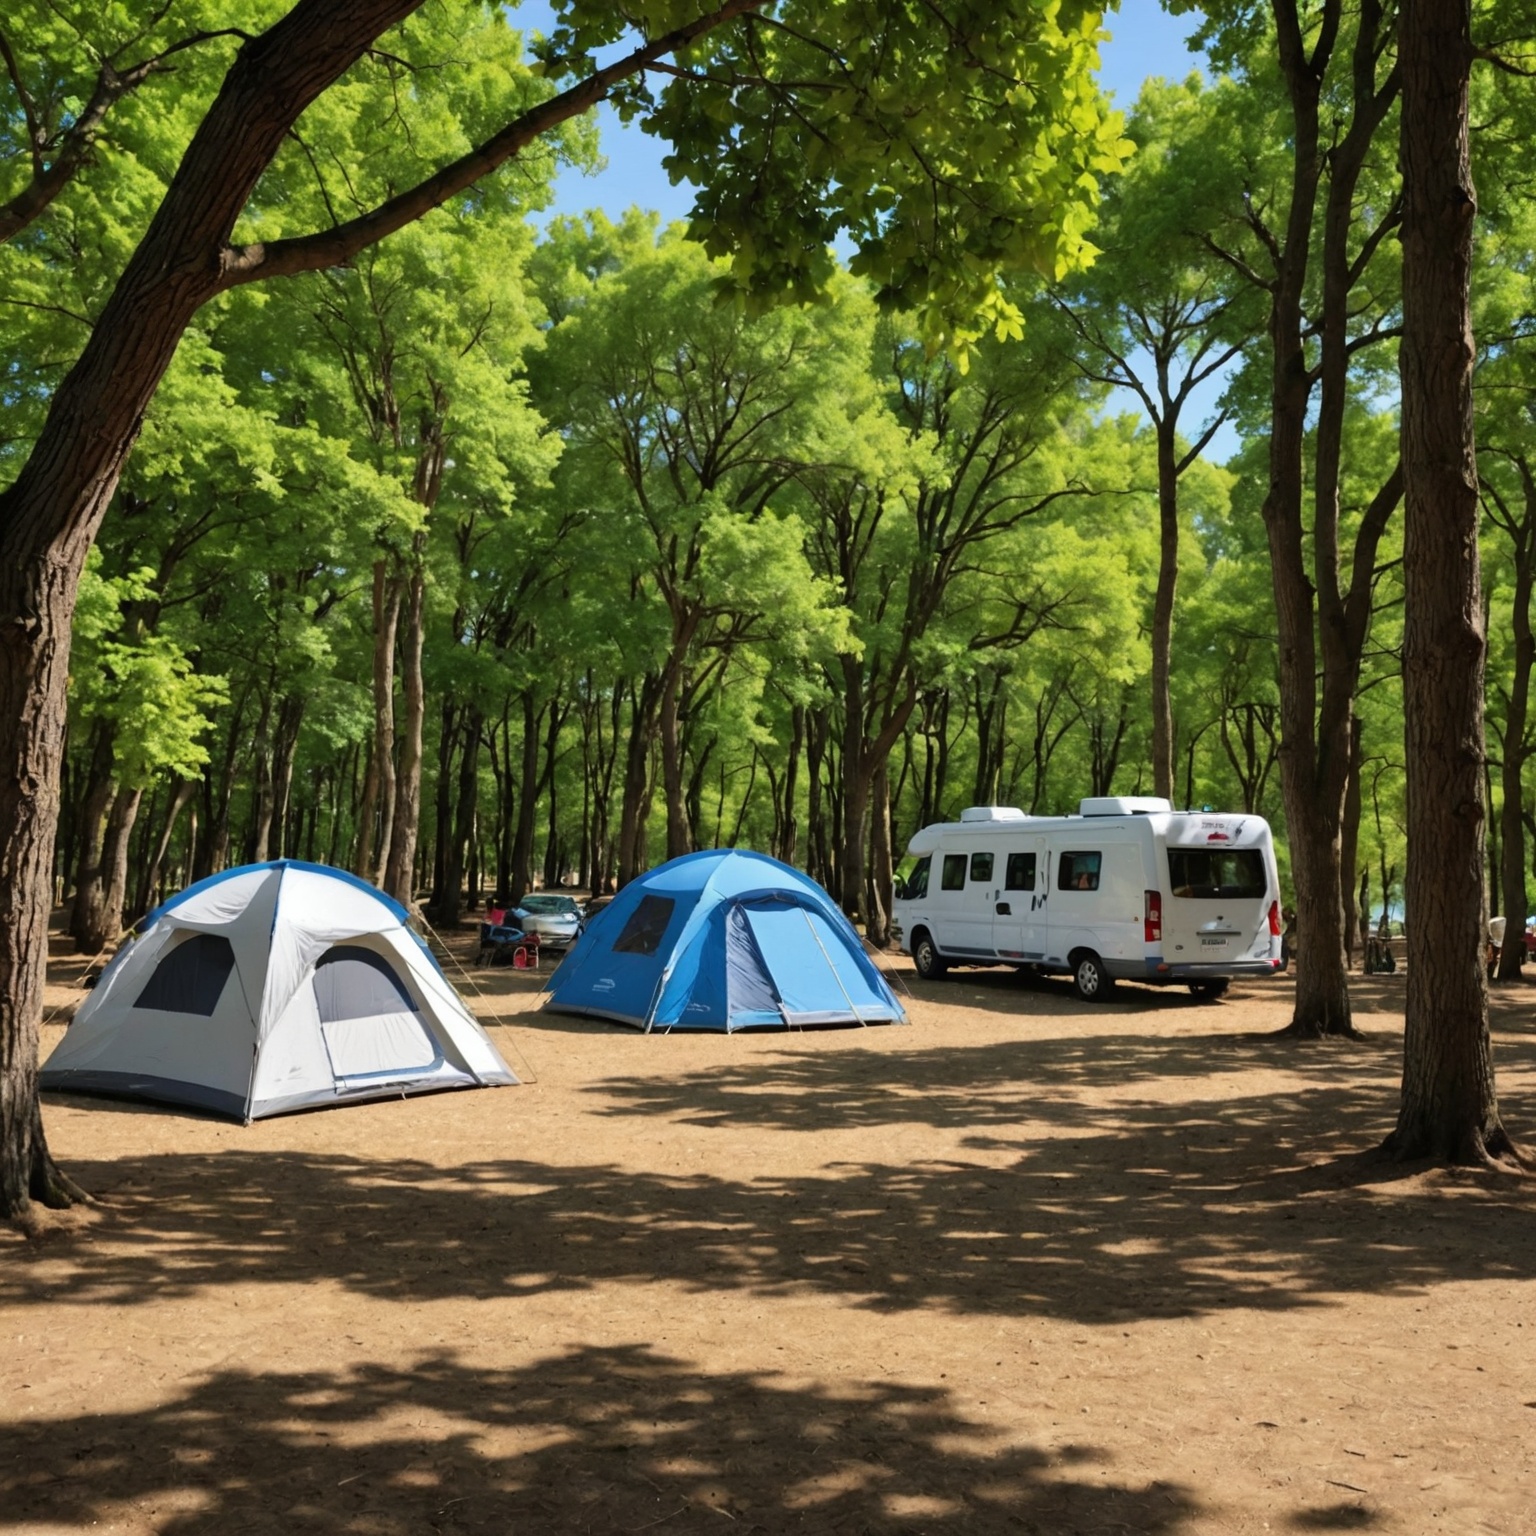 Les Secrets d’un Séjour Inoubliable: Découvrez le Charme du Camping 4 Étoiles en Vendée